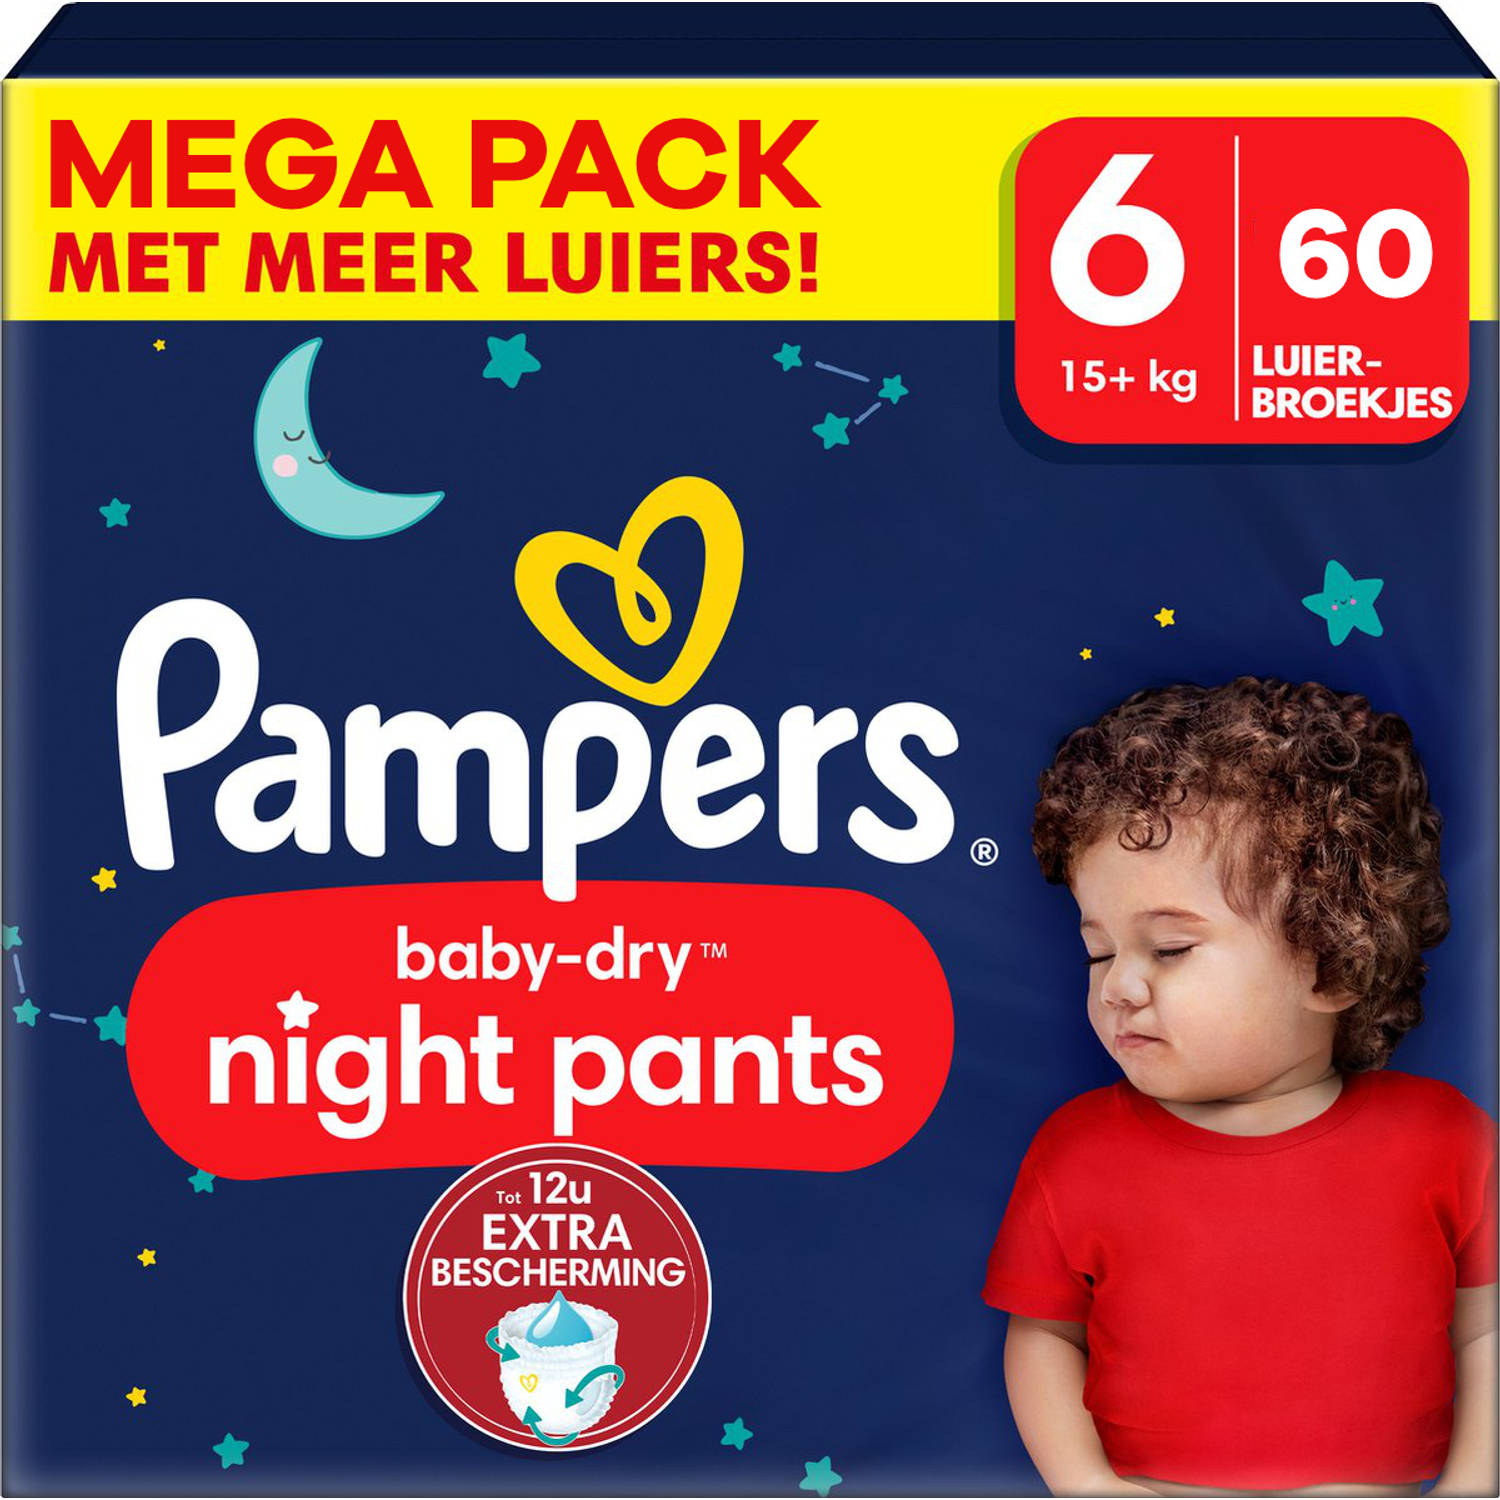 Pampers - Baby Dry Night Pants - Maat 6 - Mega Pack - 60 Stuks - 15+ Kg